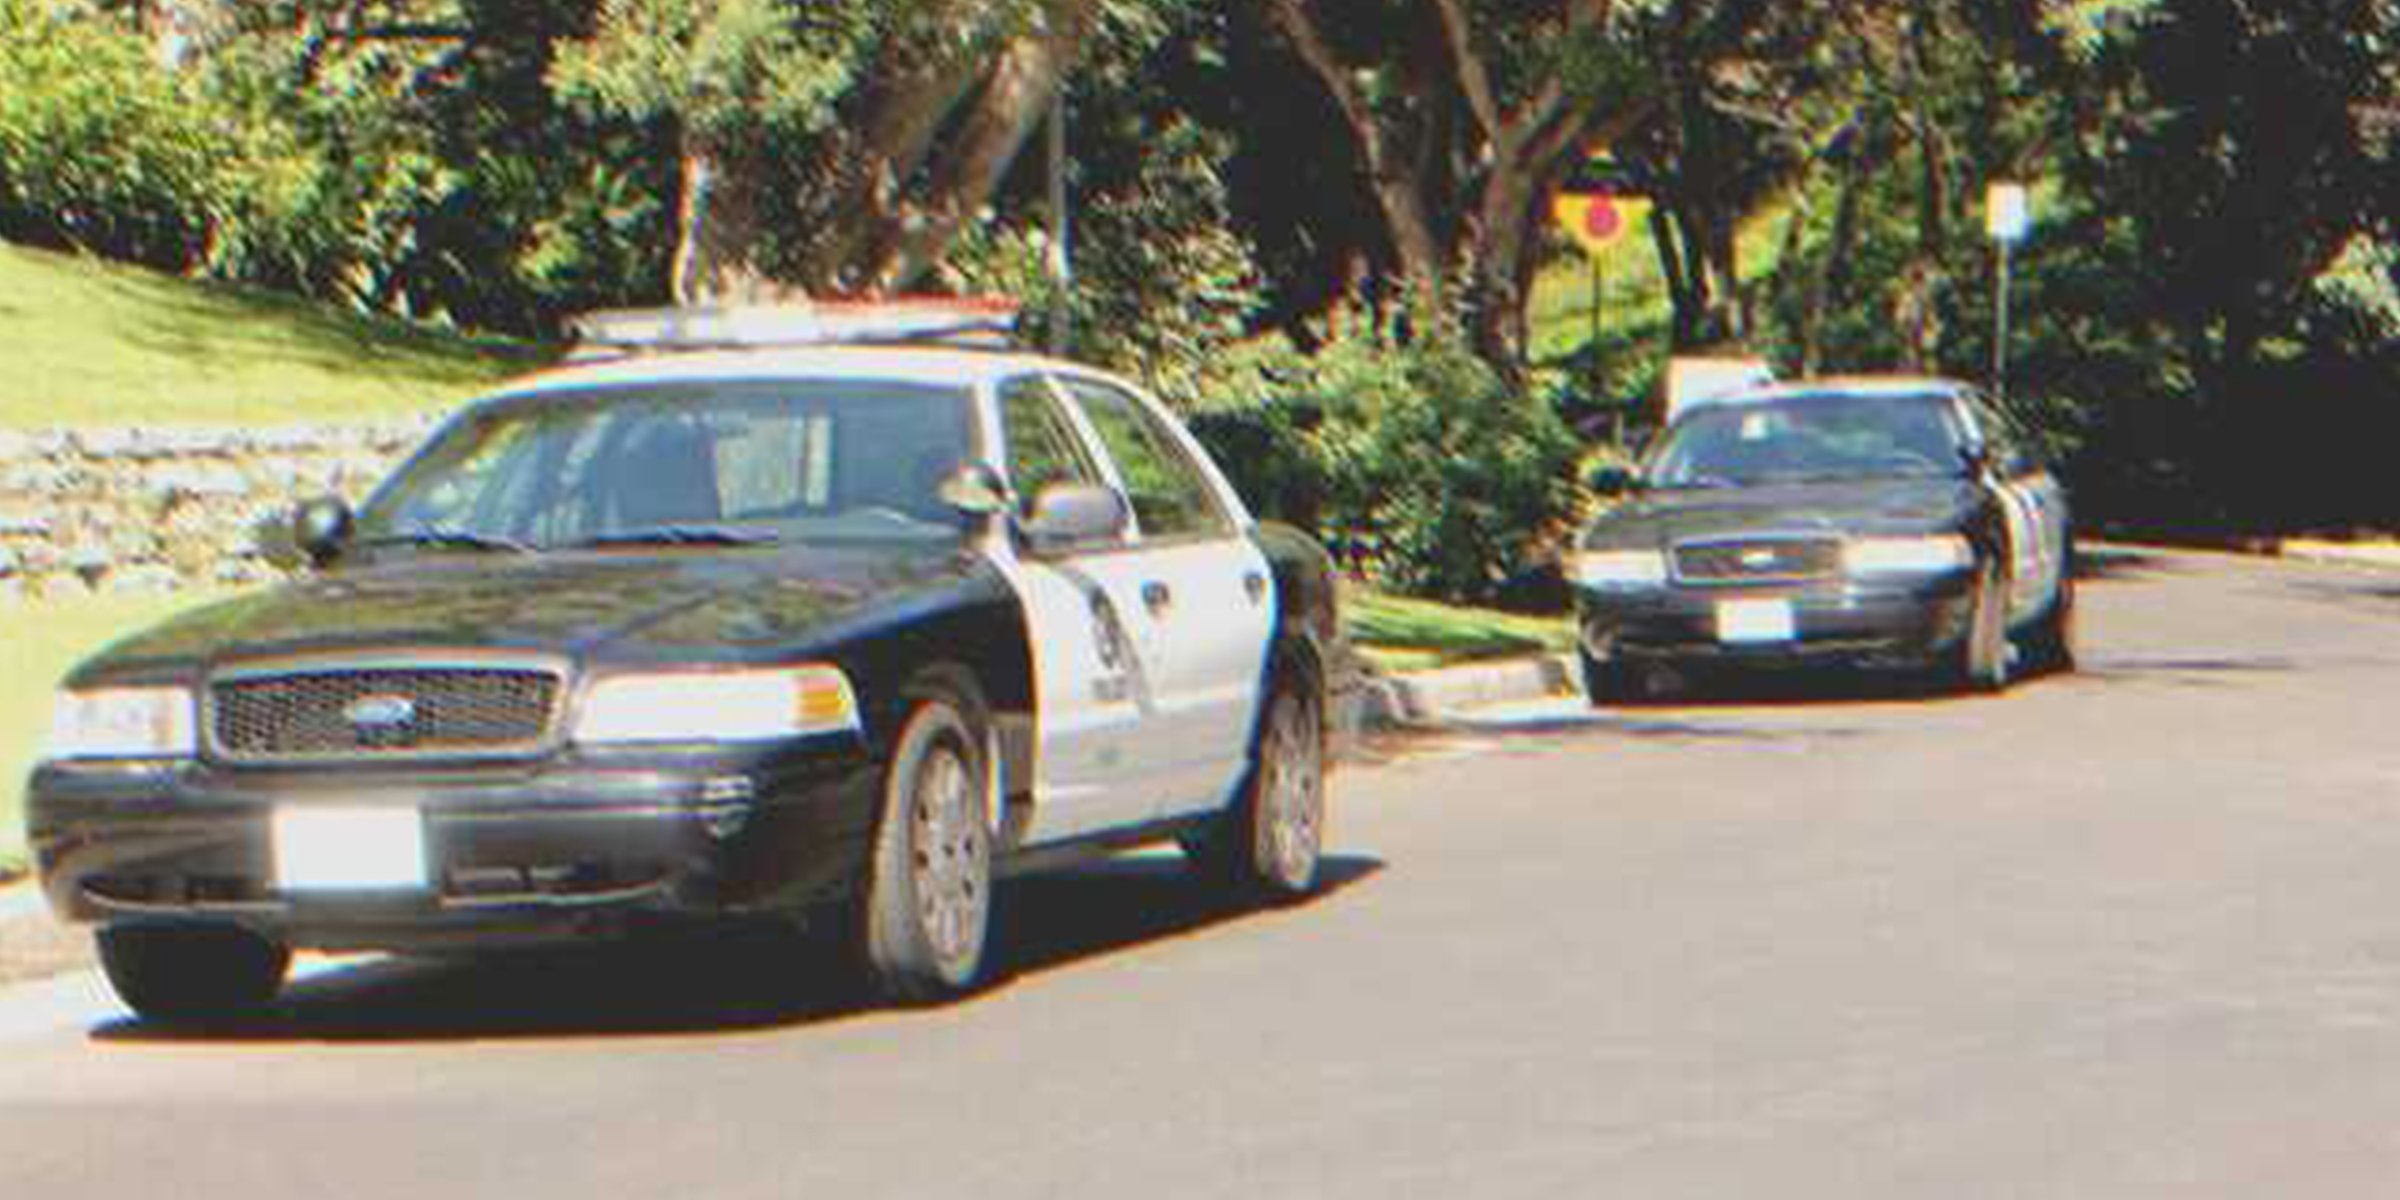 Dos patrullas de la policia | Foto: Shutterstock